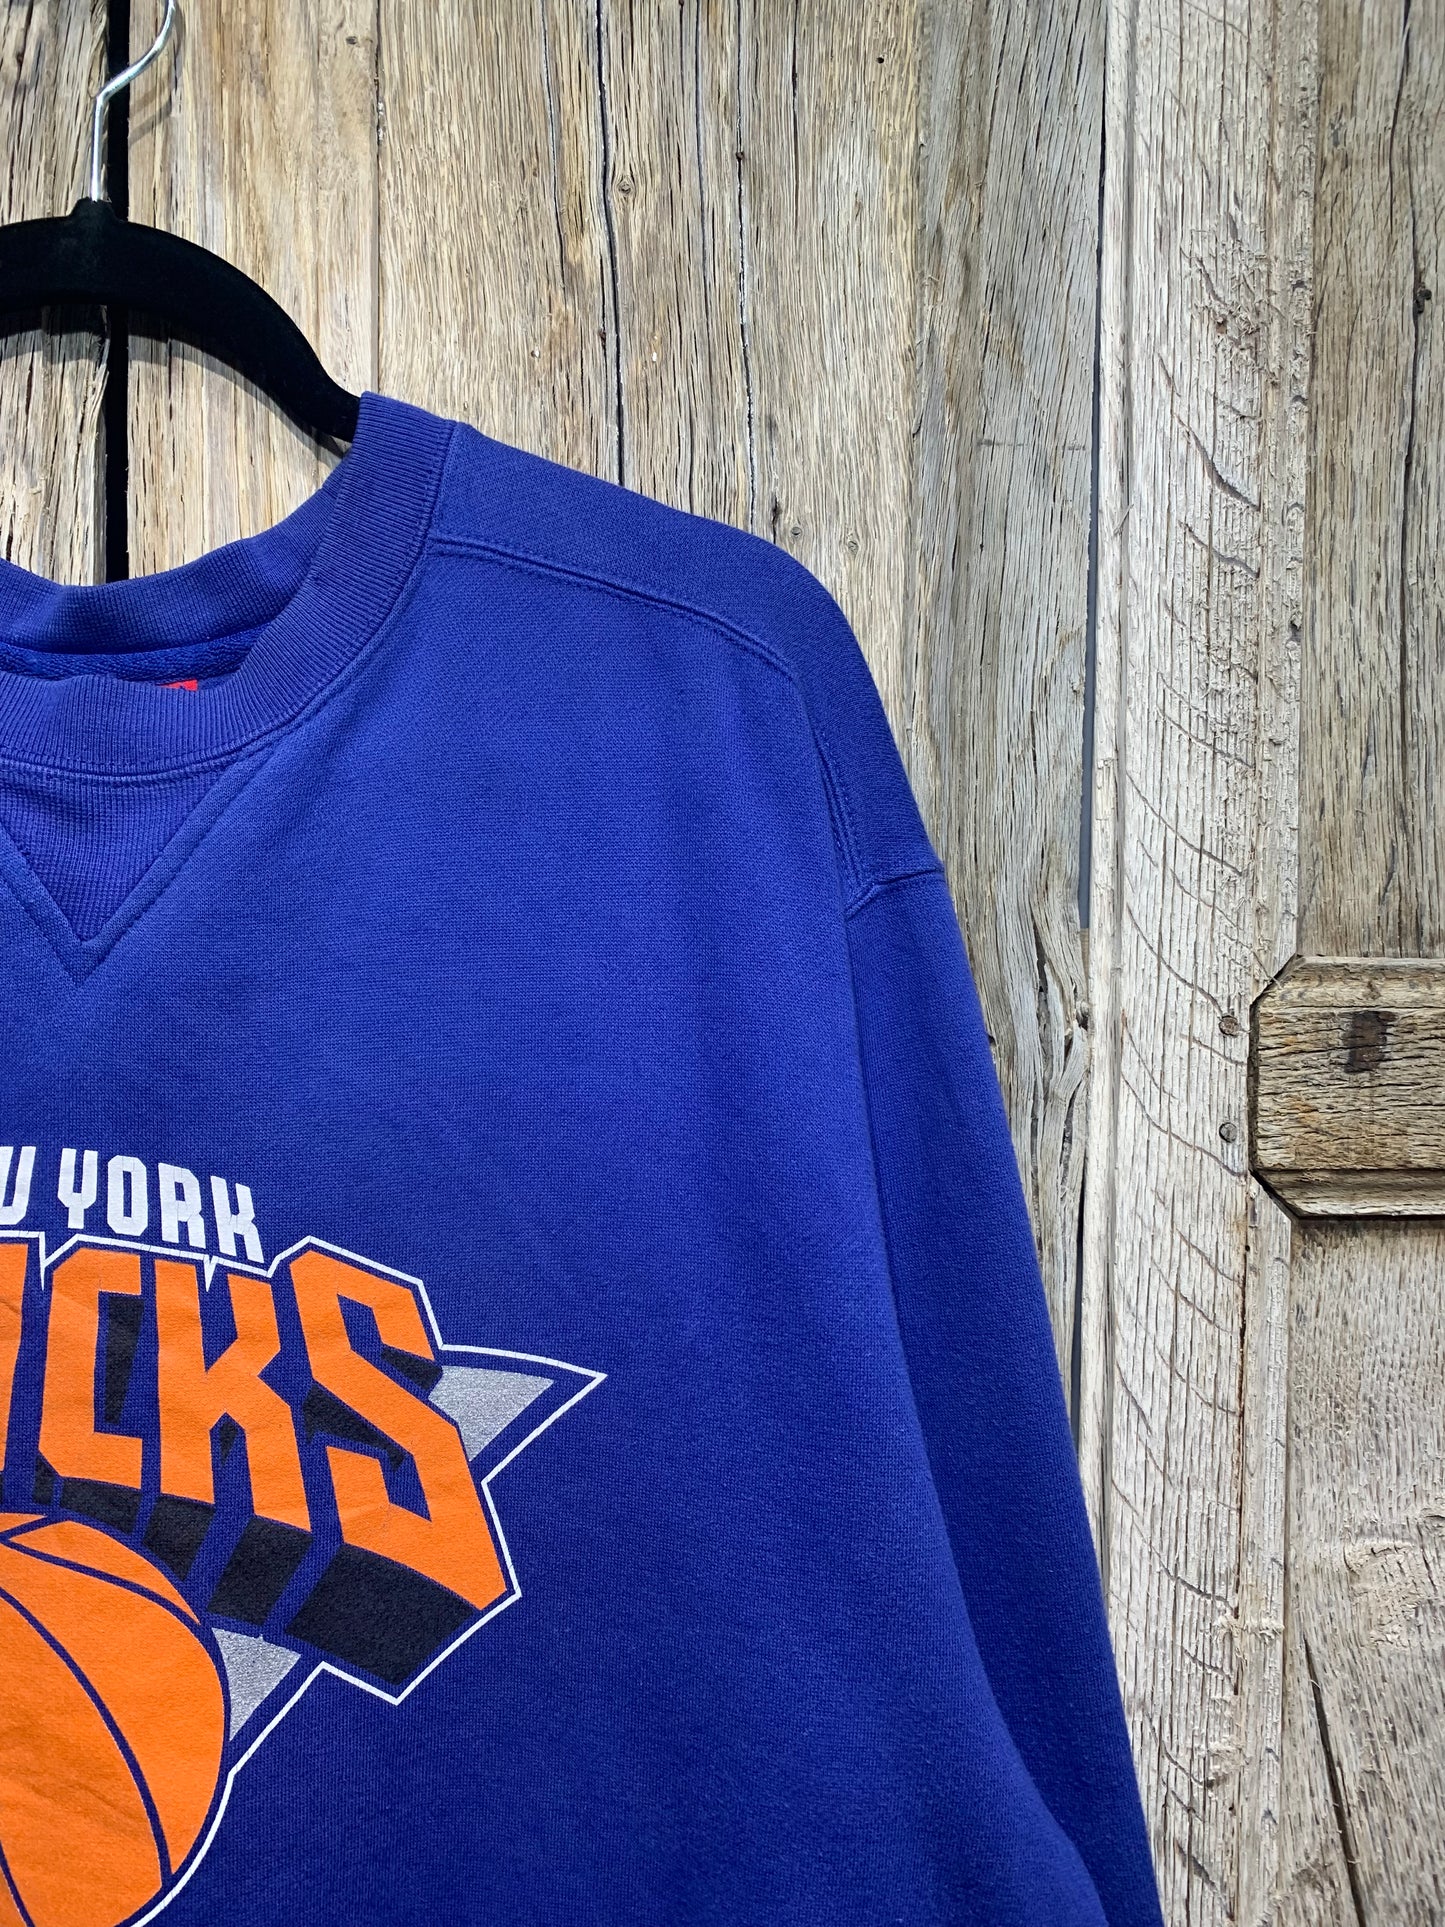 Vintage Blue Reebok NY Knicks Sweatshirt